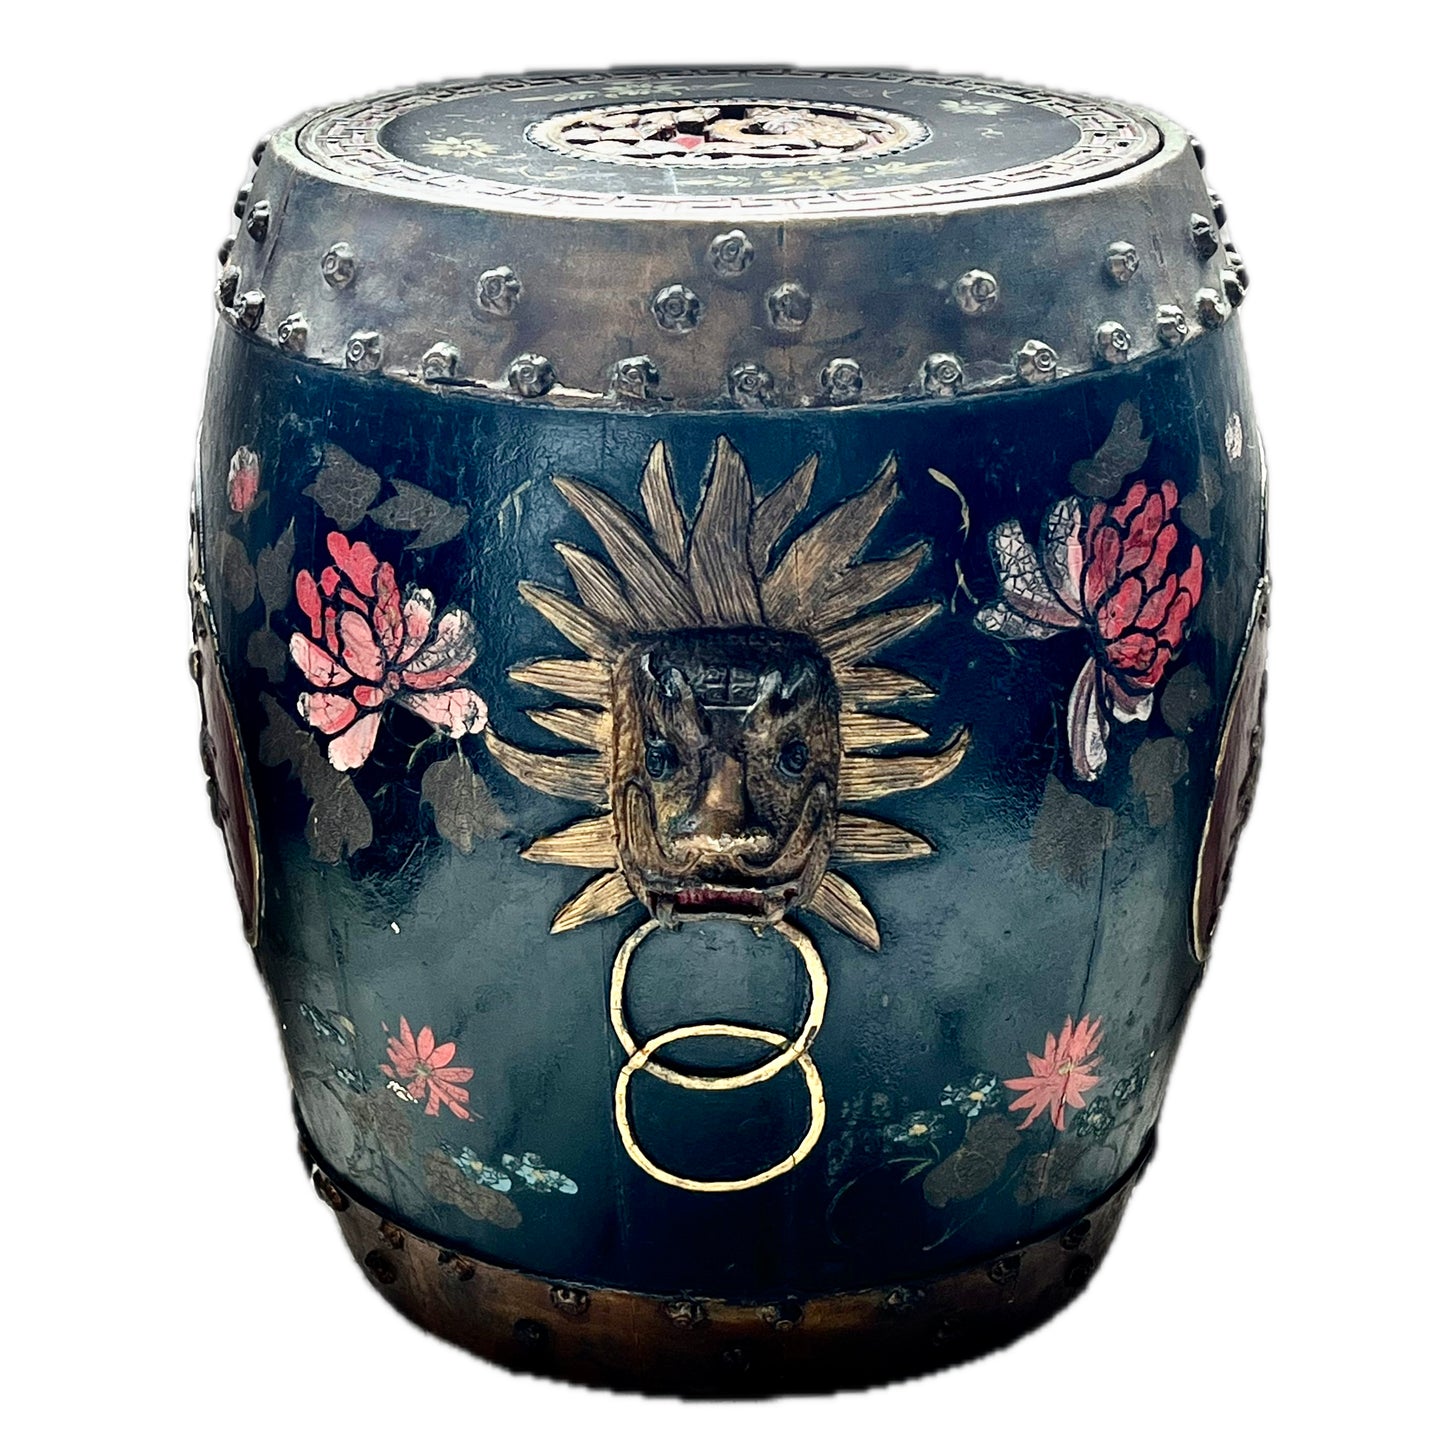 一对罕见而令人惊叹的十九世纪中后期清朝手绘漆器香料桶